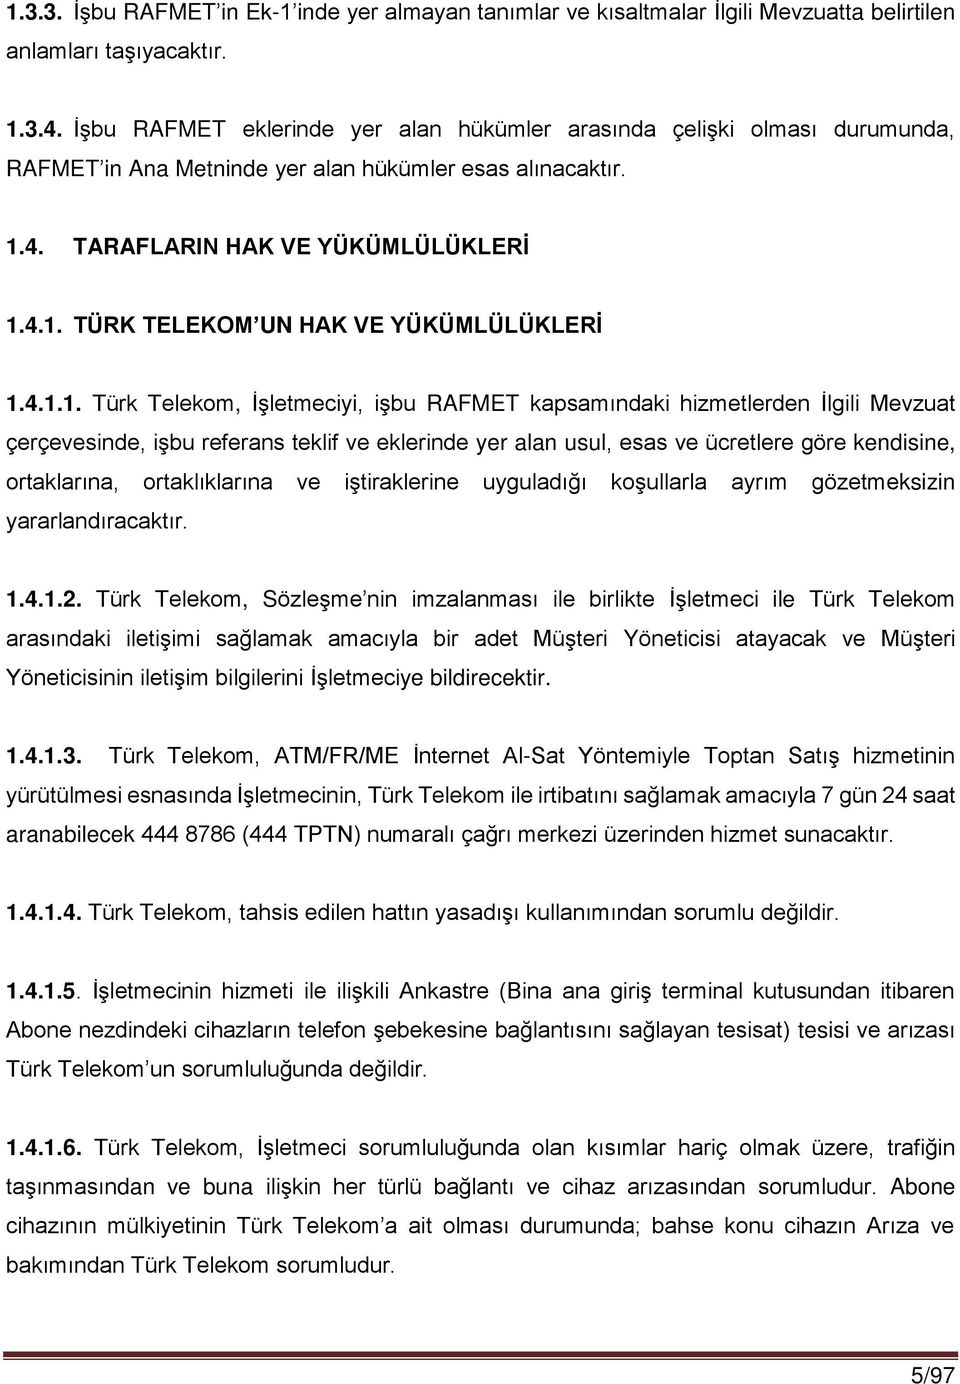 4.1.1. Türk Telekom, İşletmeciyi, işbu RAFMET kapsamındaki hizmetlerden İlgili Mevzuat çerçevesinde, işbu referans teklif ve eklerinde yer alan usul, esas ve ücretlere göre kendisine, ortaklarına,